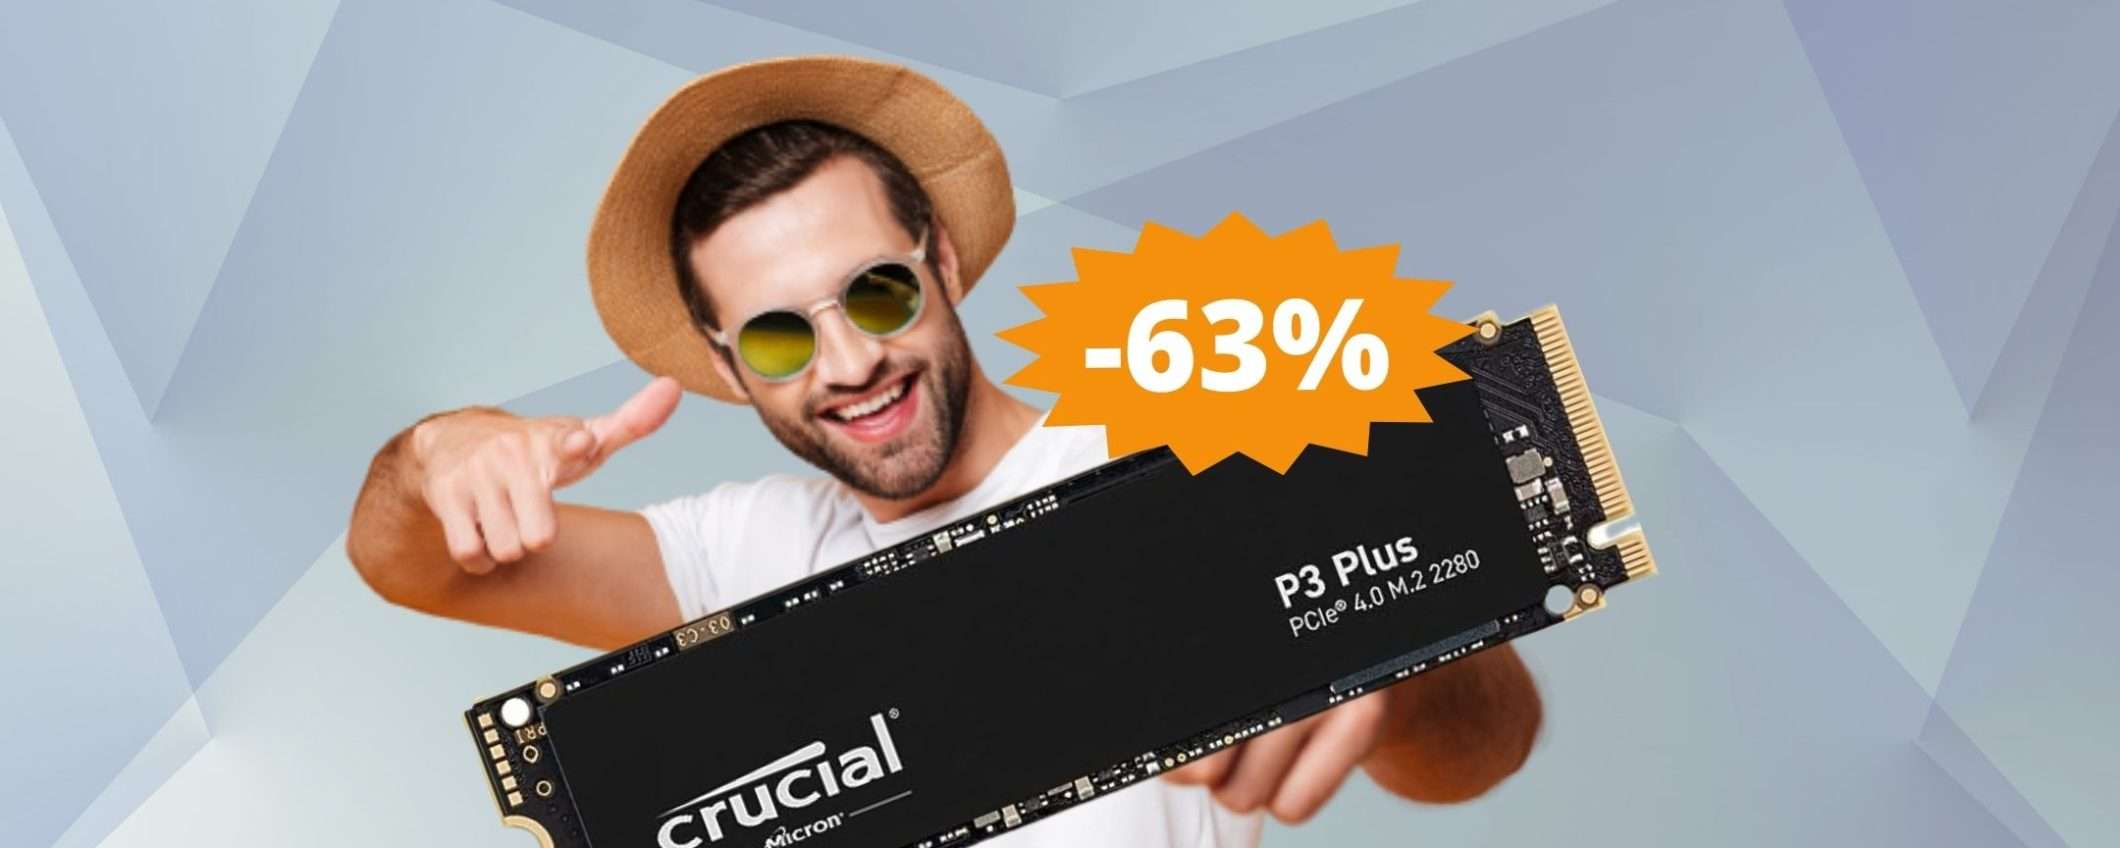 SSD Interno Crucial P3 Plus: sconto FOLLE del 63%